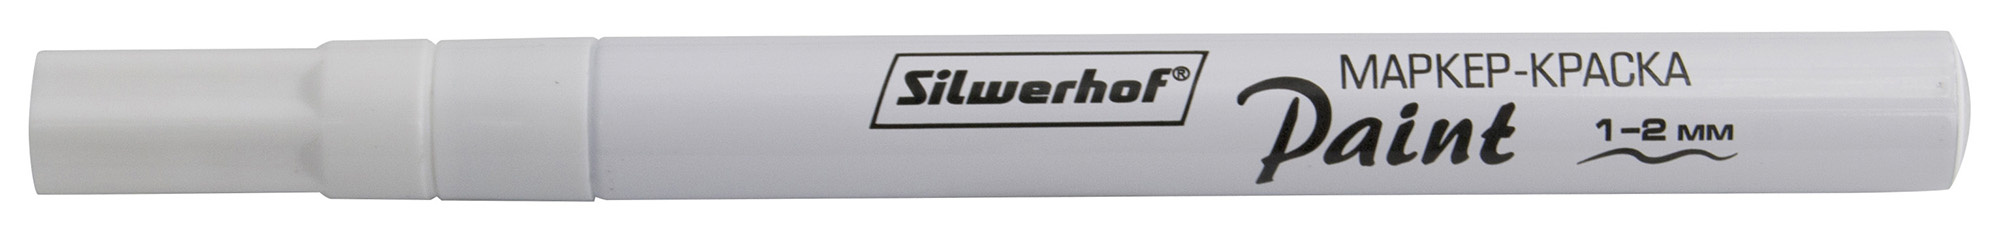 Маркер лаковый Silwerhof Paint пулевидный пиш. наконечник 1-2мм металический корпус белый